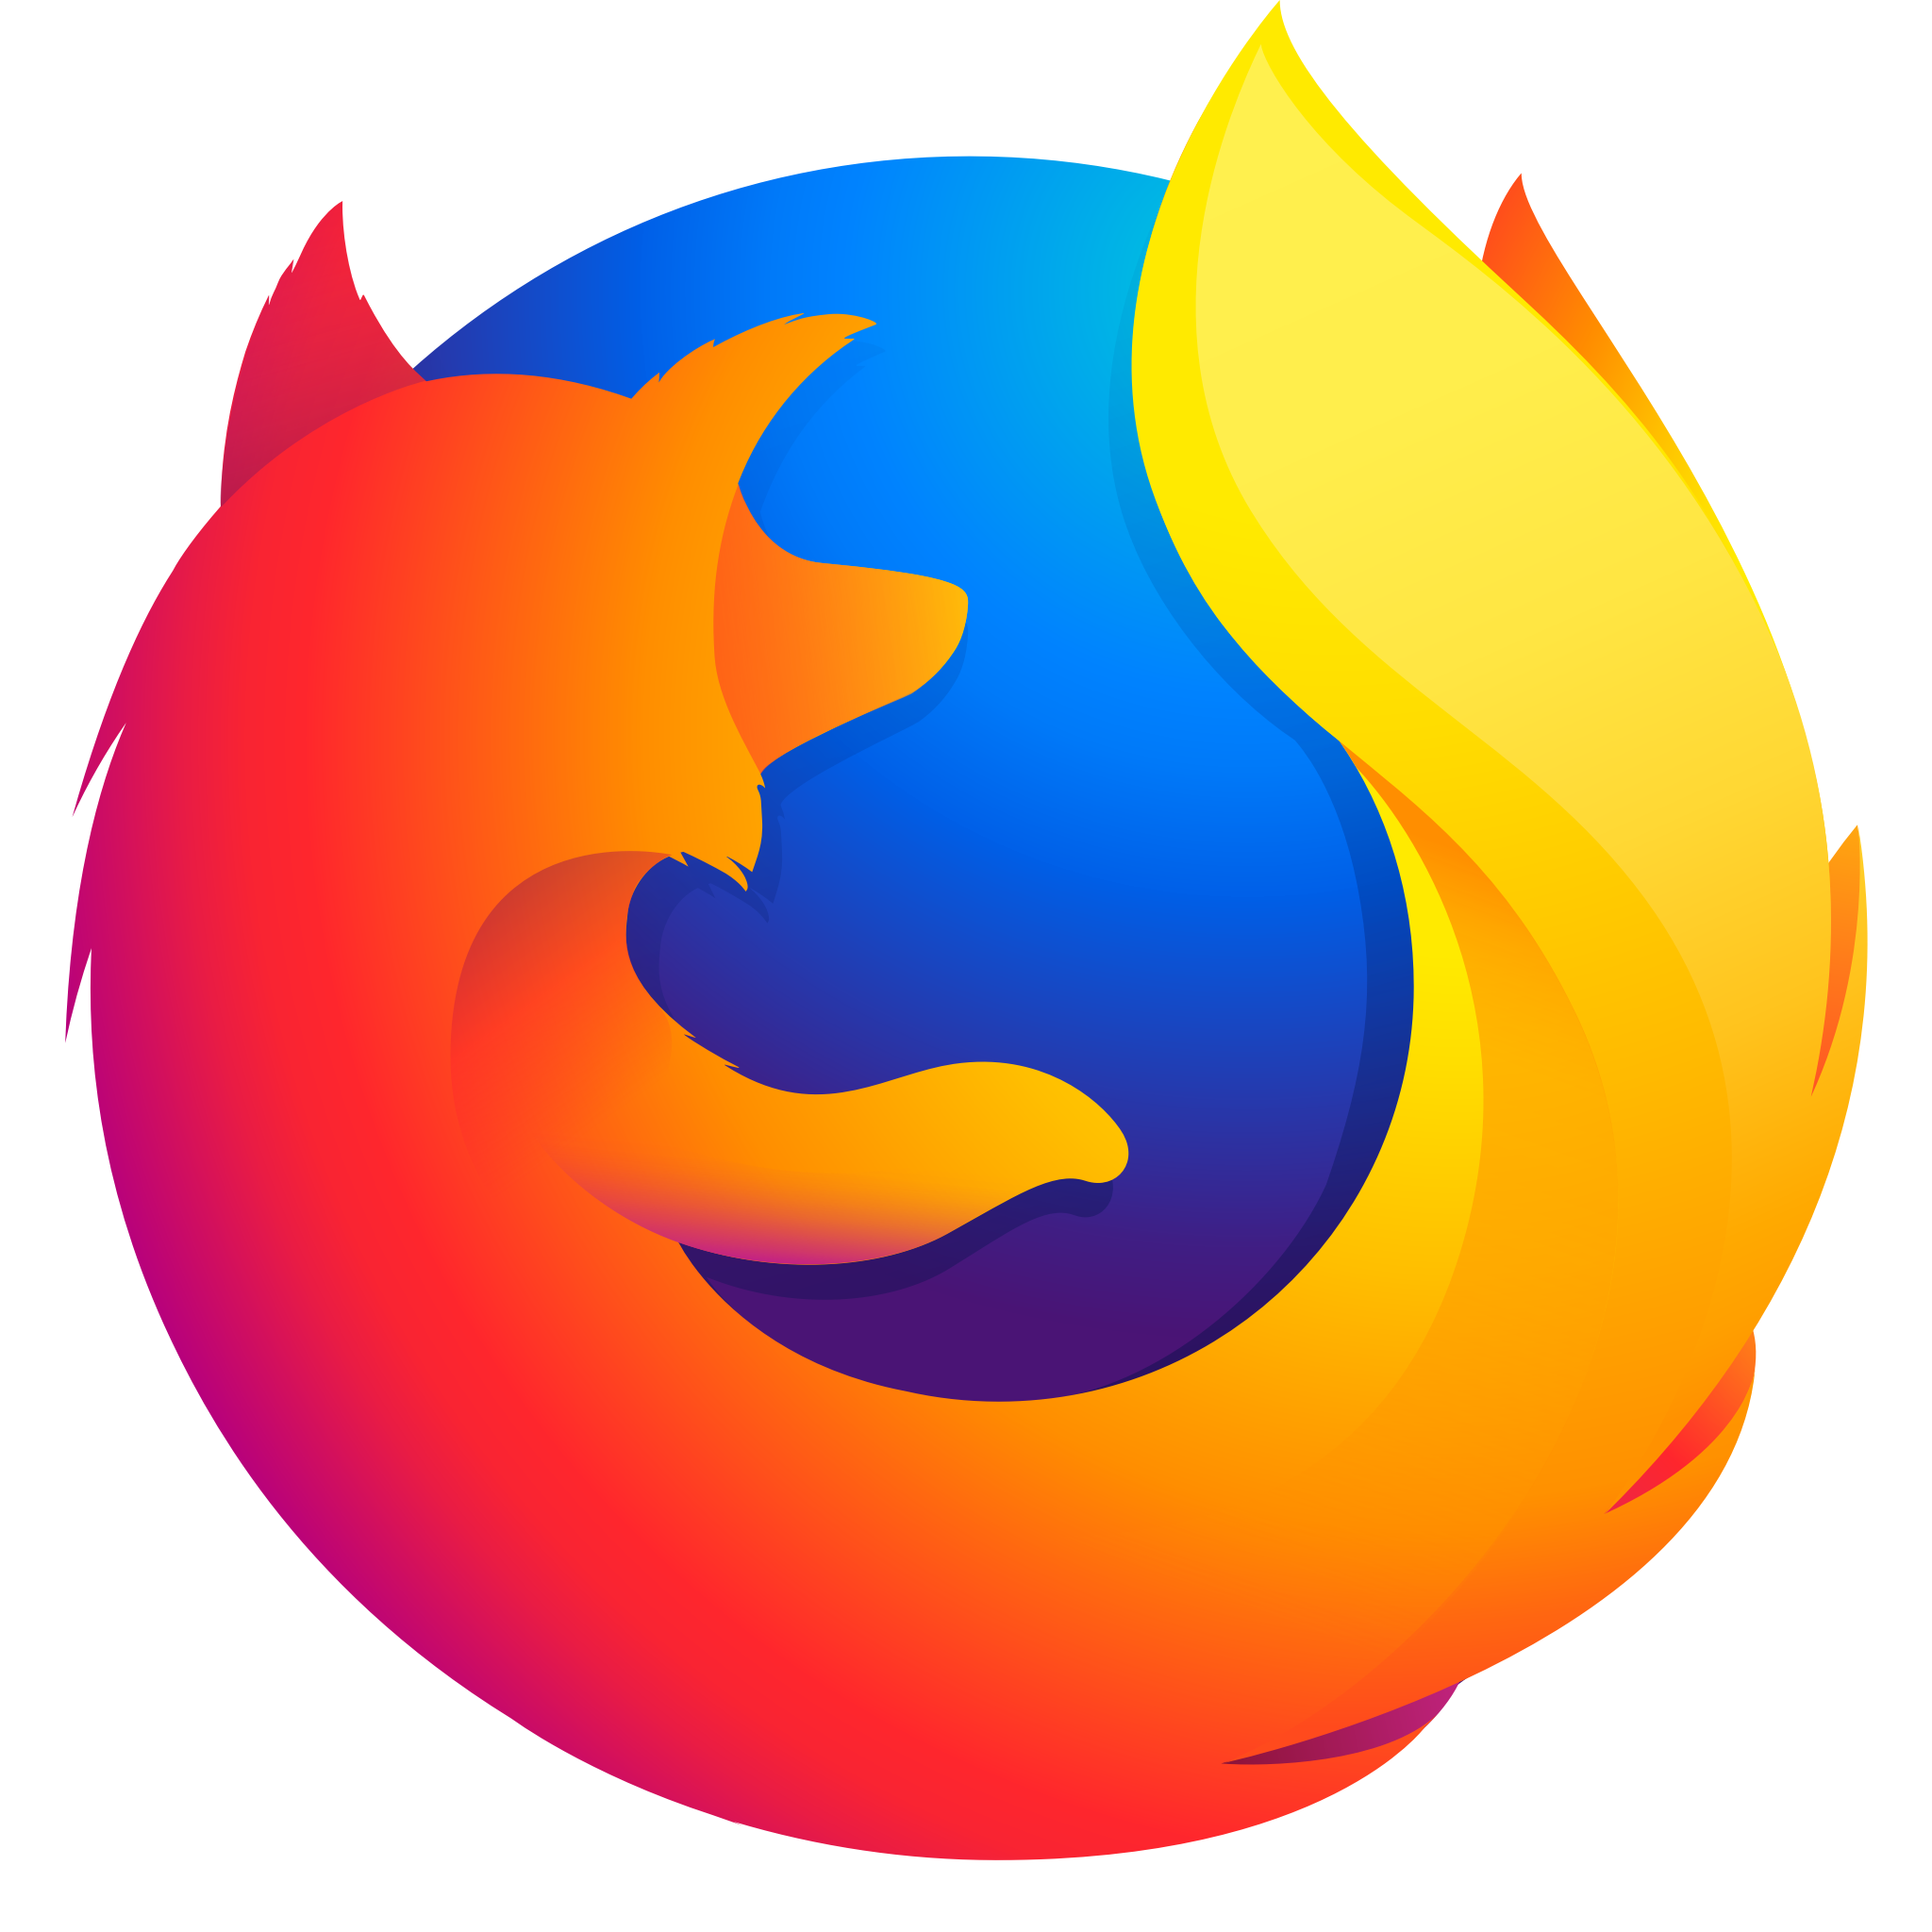 Firefox 121